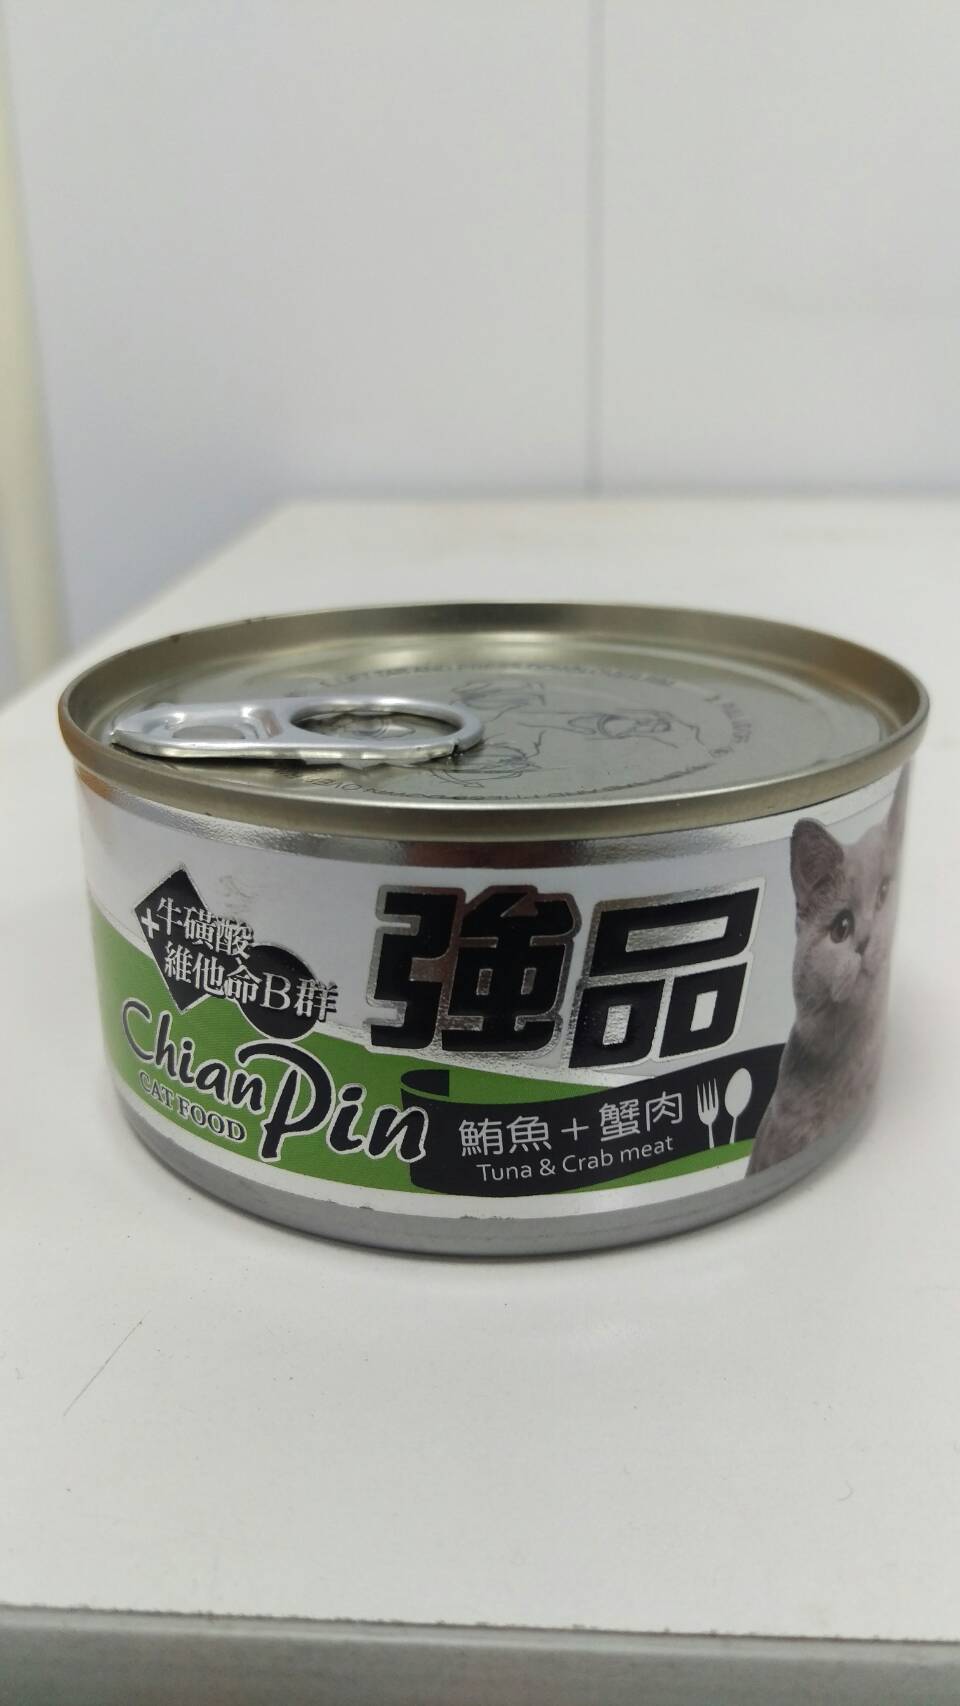 強品貓罐-鮪魚+蟹肉
Chian Pin cat can- tuna+crab meat